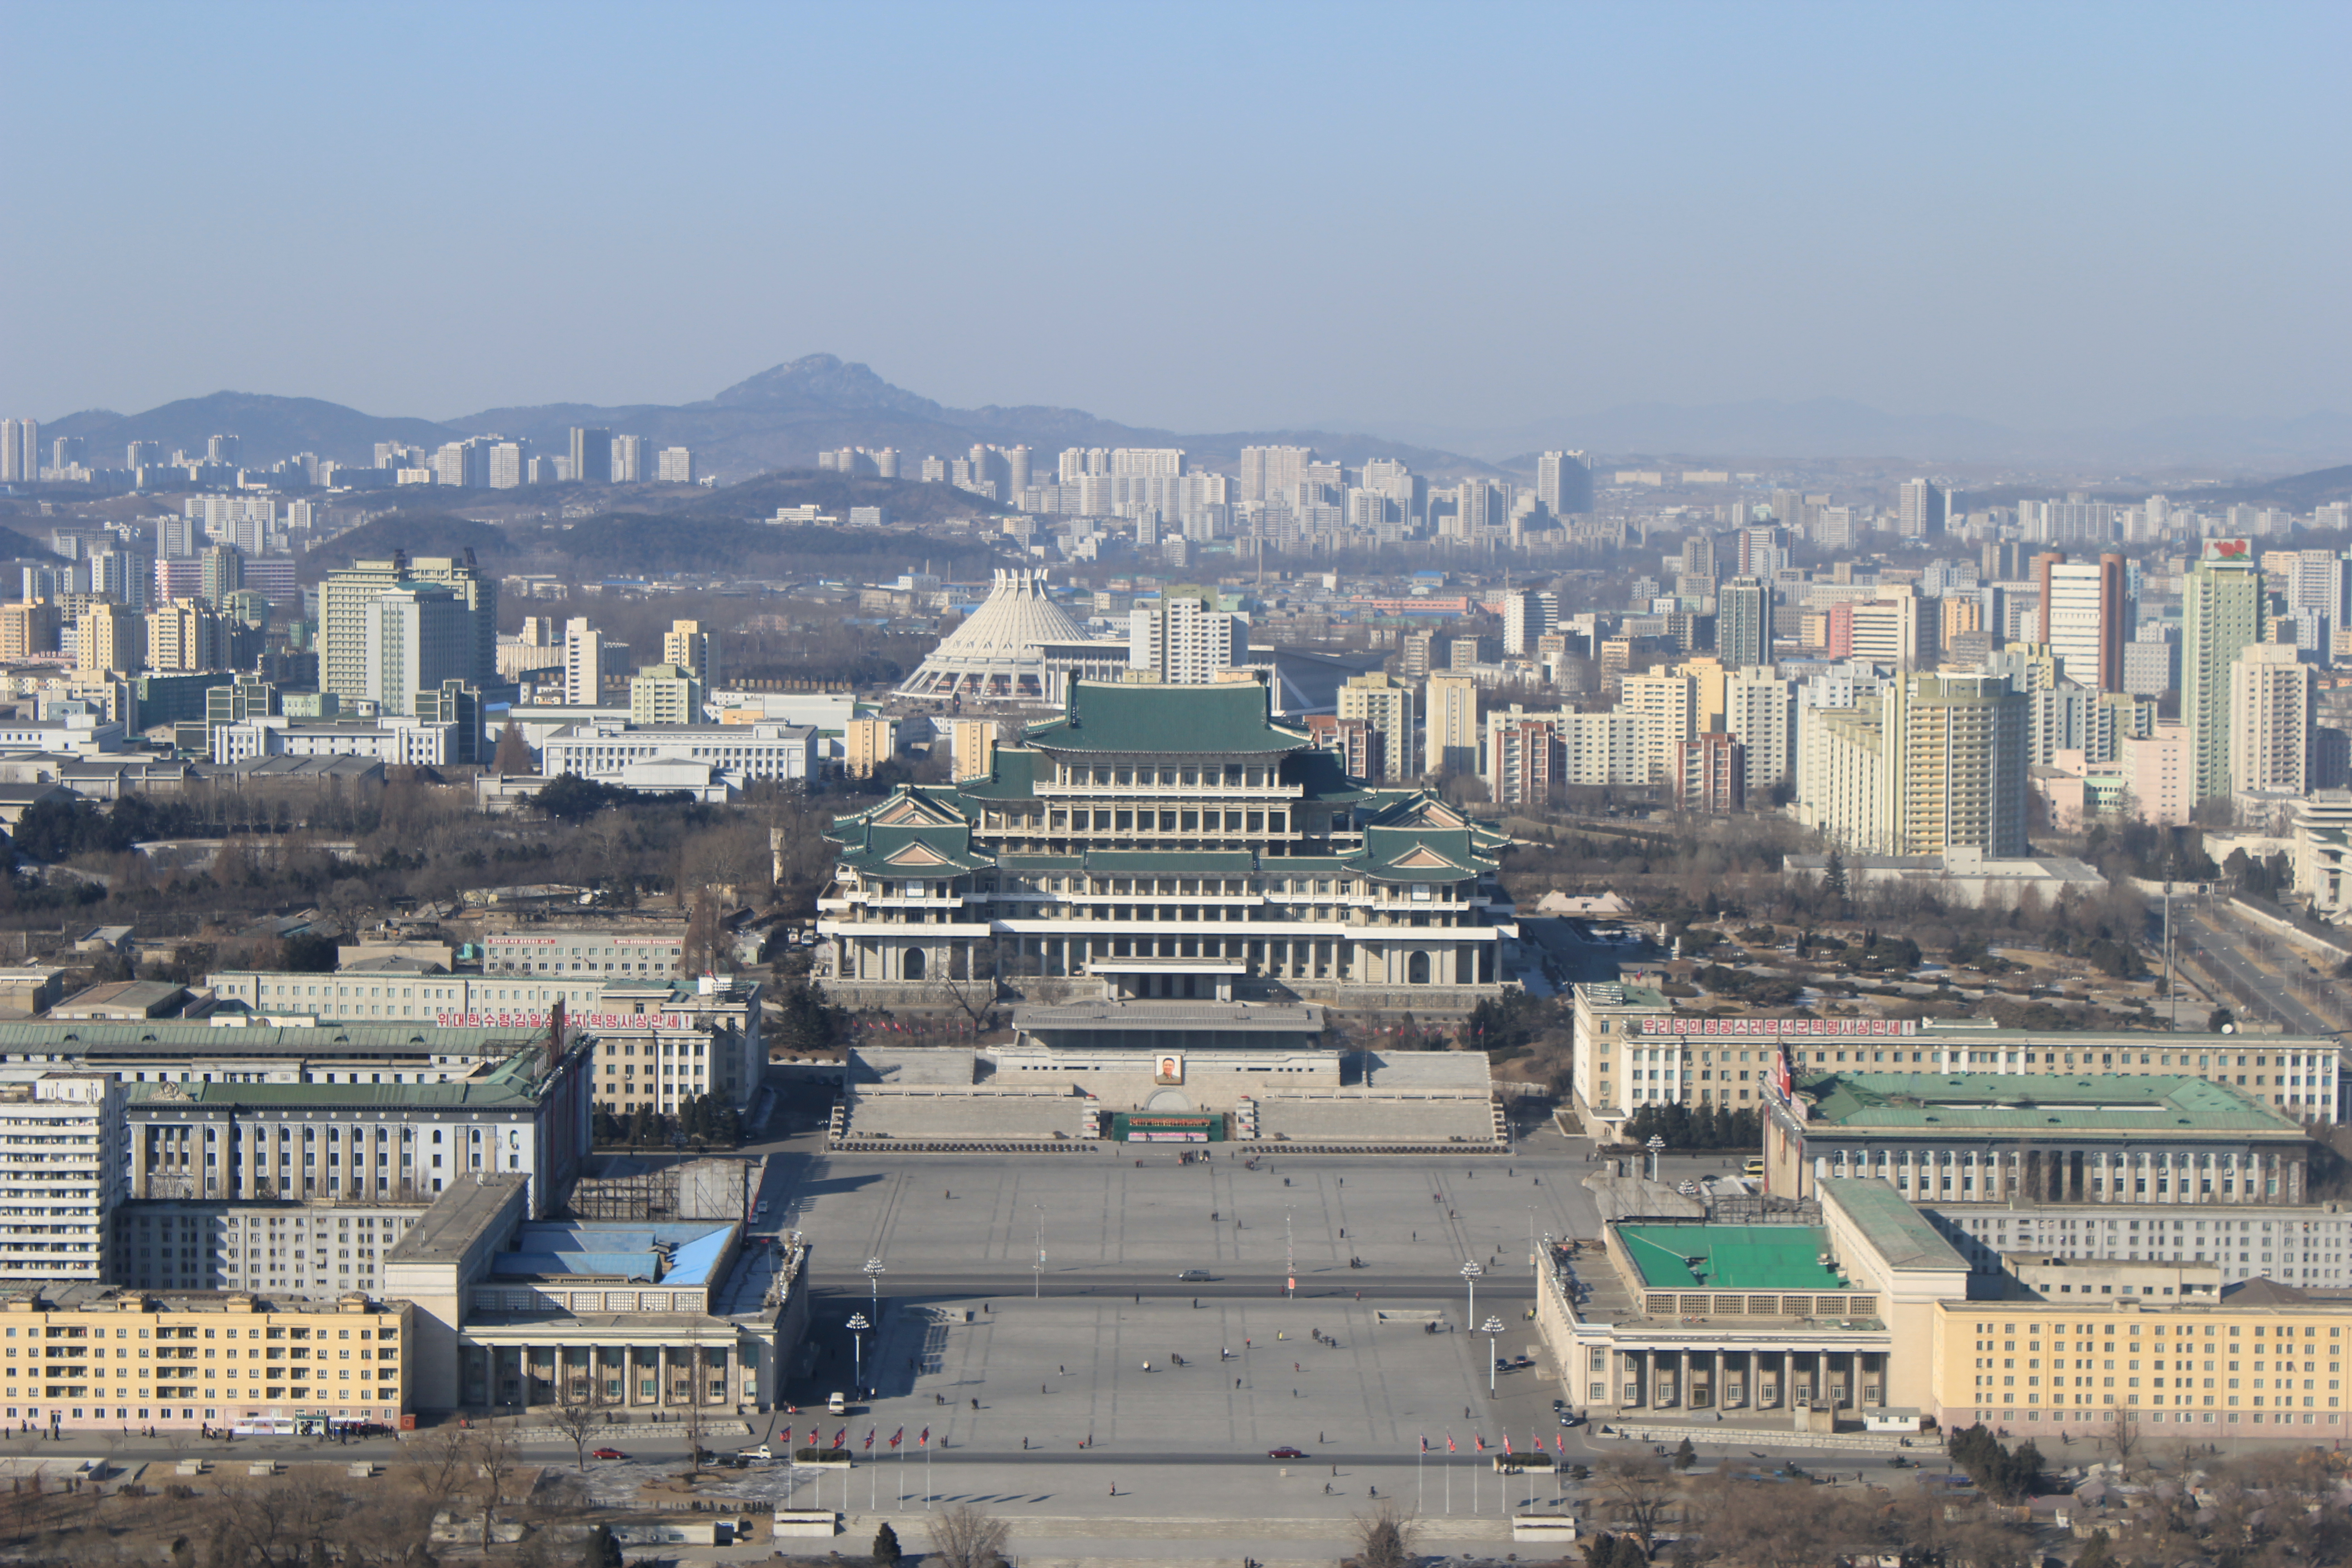 Area north. Центральная площадь Пхеньяна. Площадь Северной Кореи.